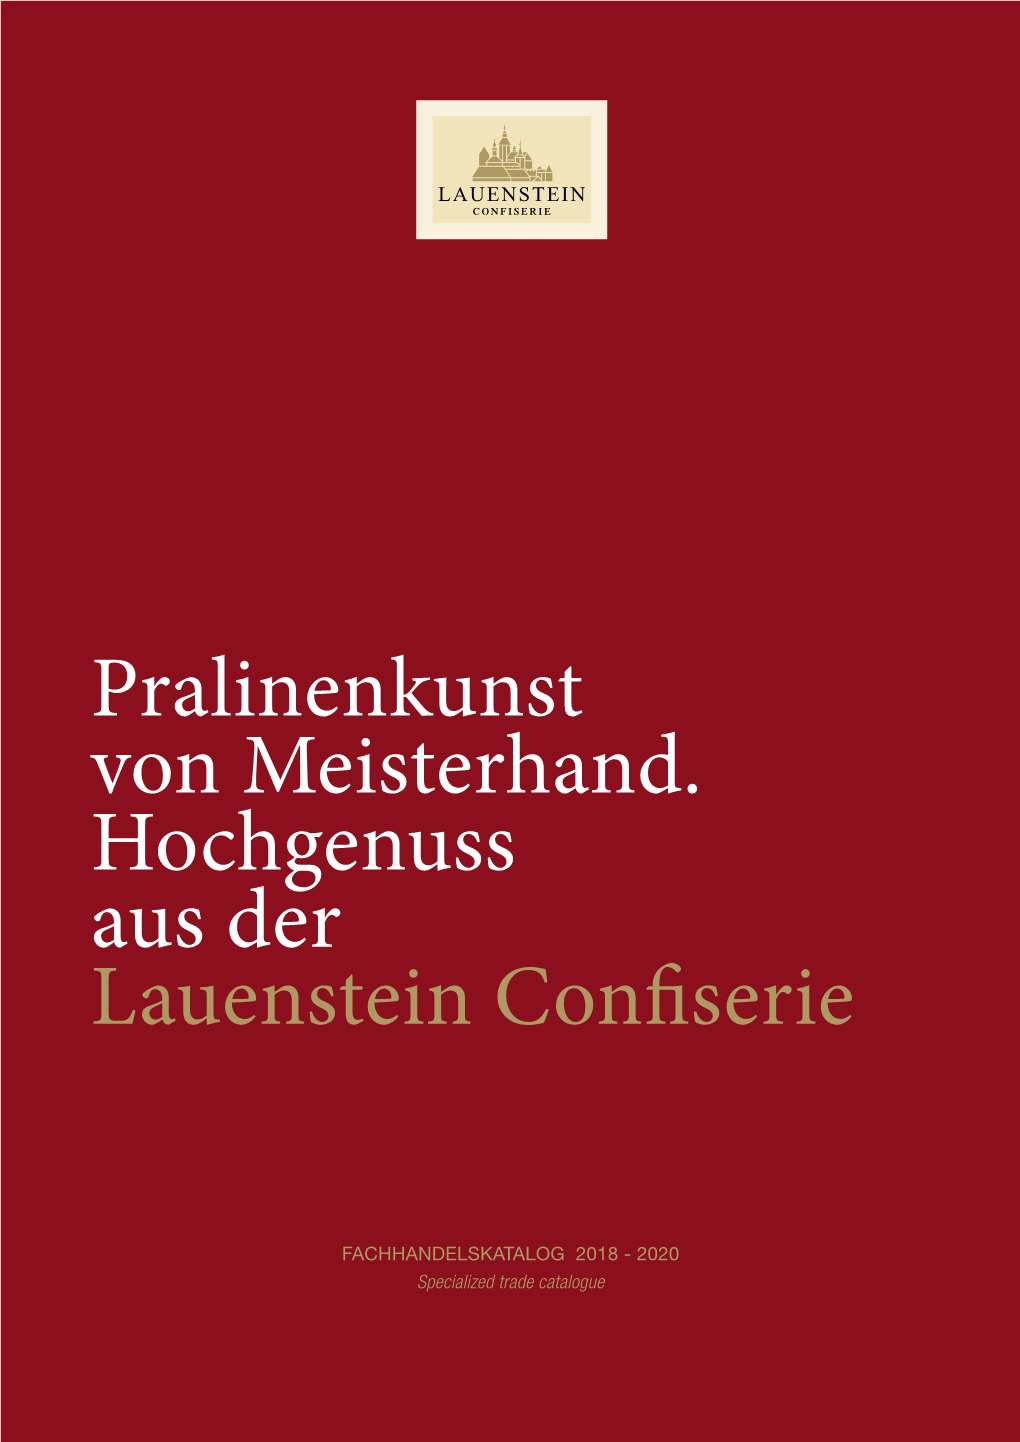 Lauenstein Con Serie